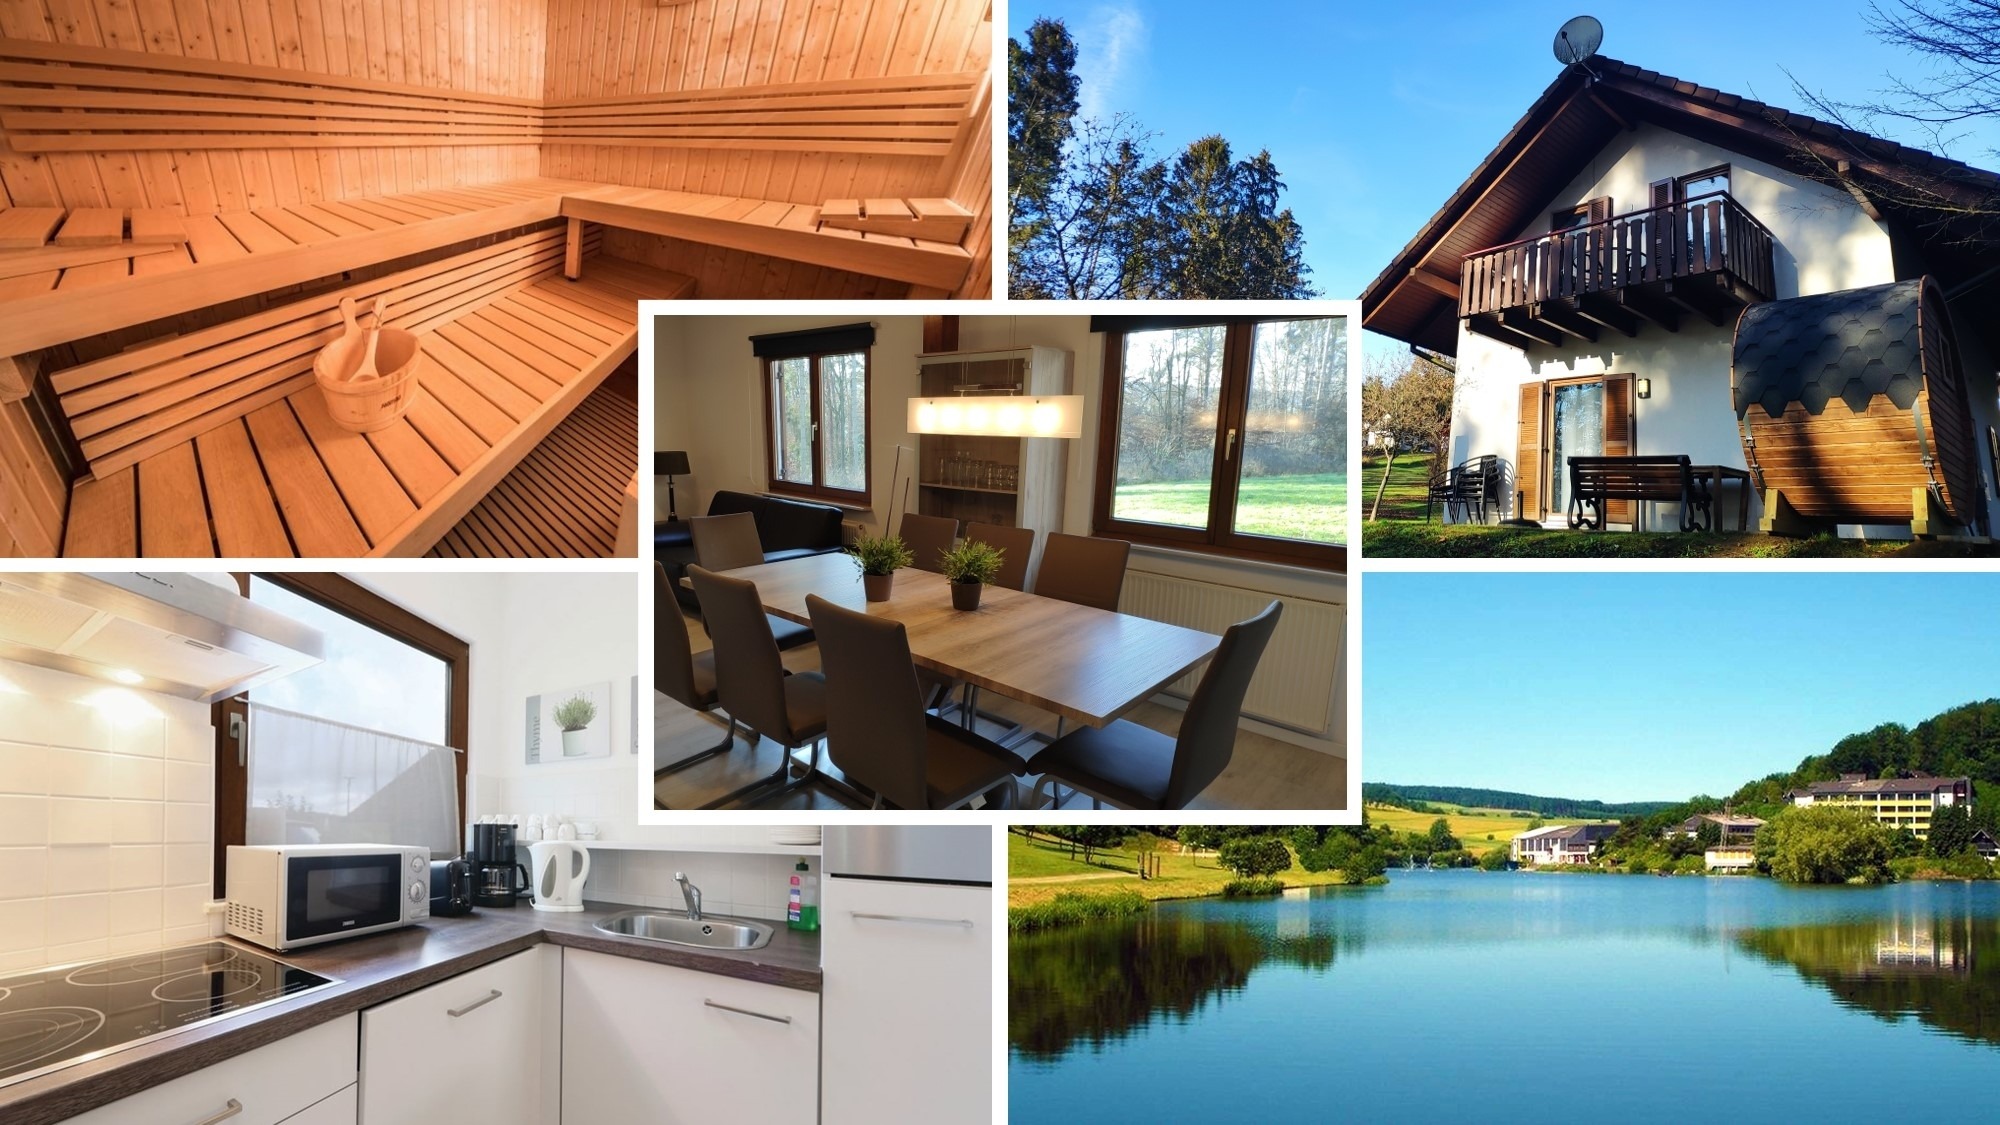 Ferienhaus Zeta mit Sauna, See, Wald und Ruhe Ferienhaus in Deutschland